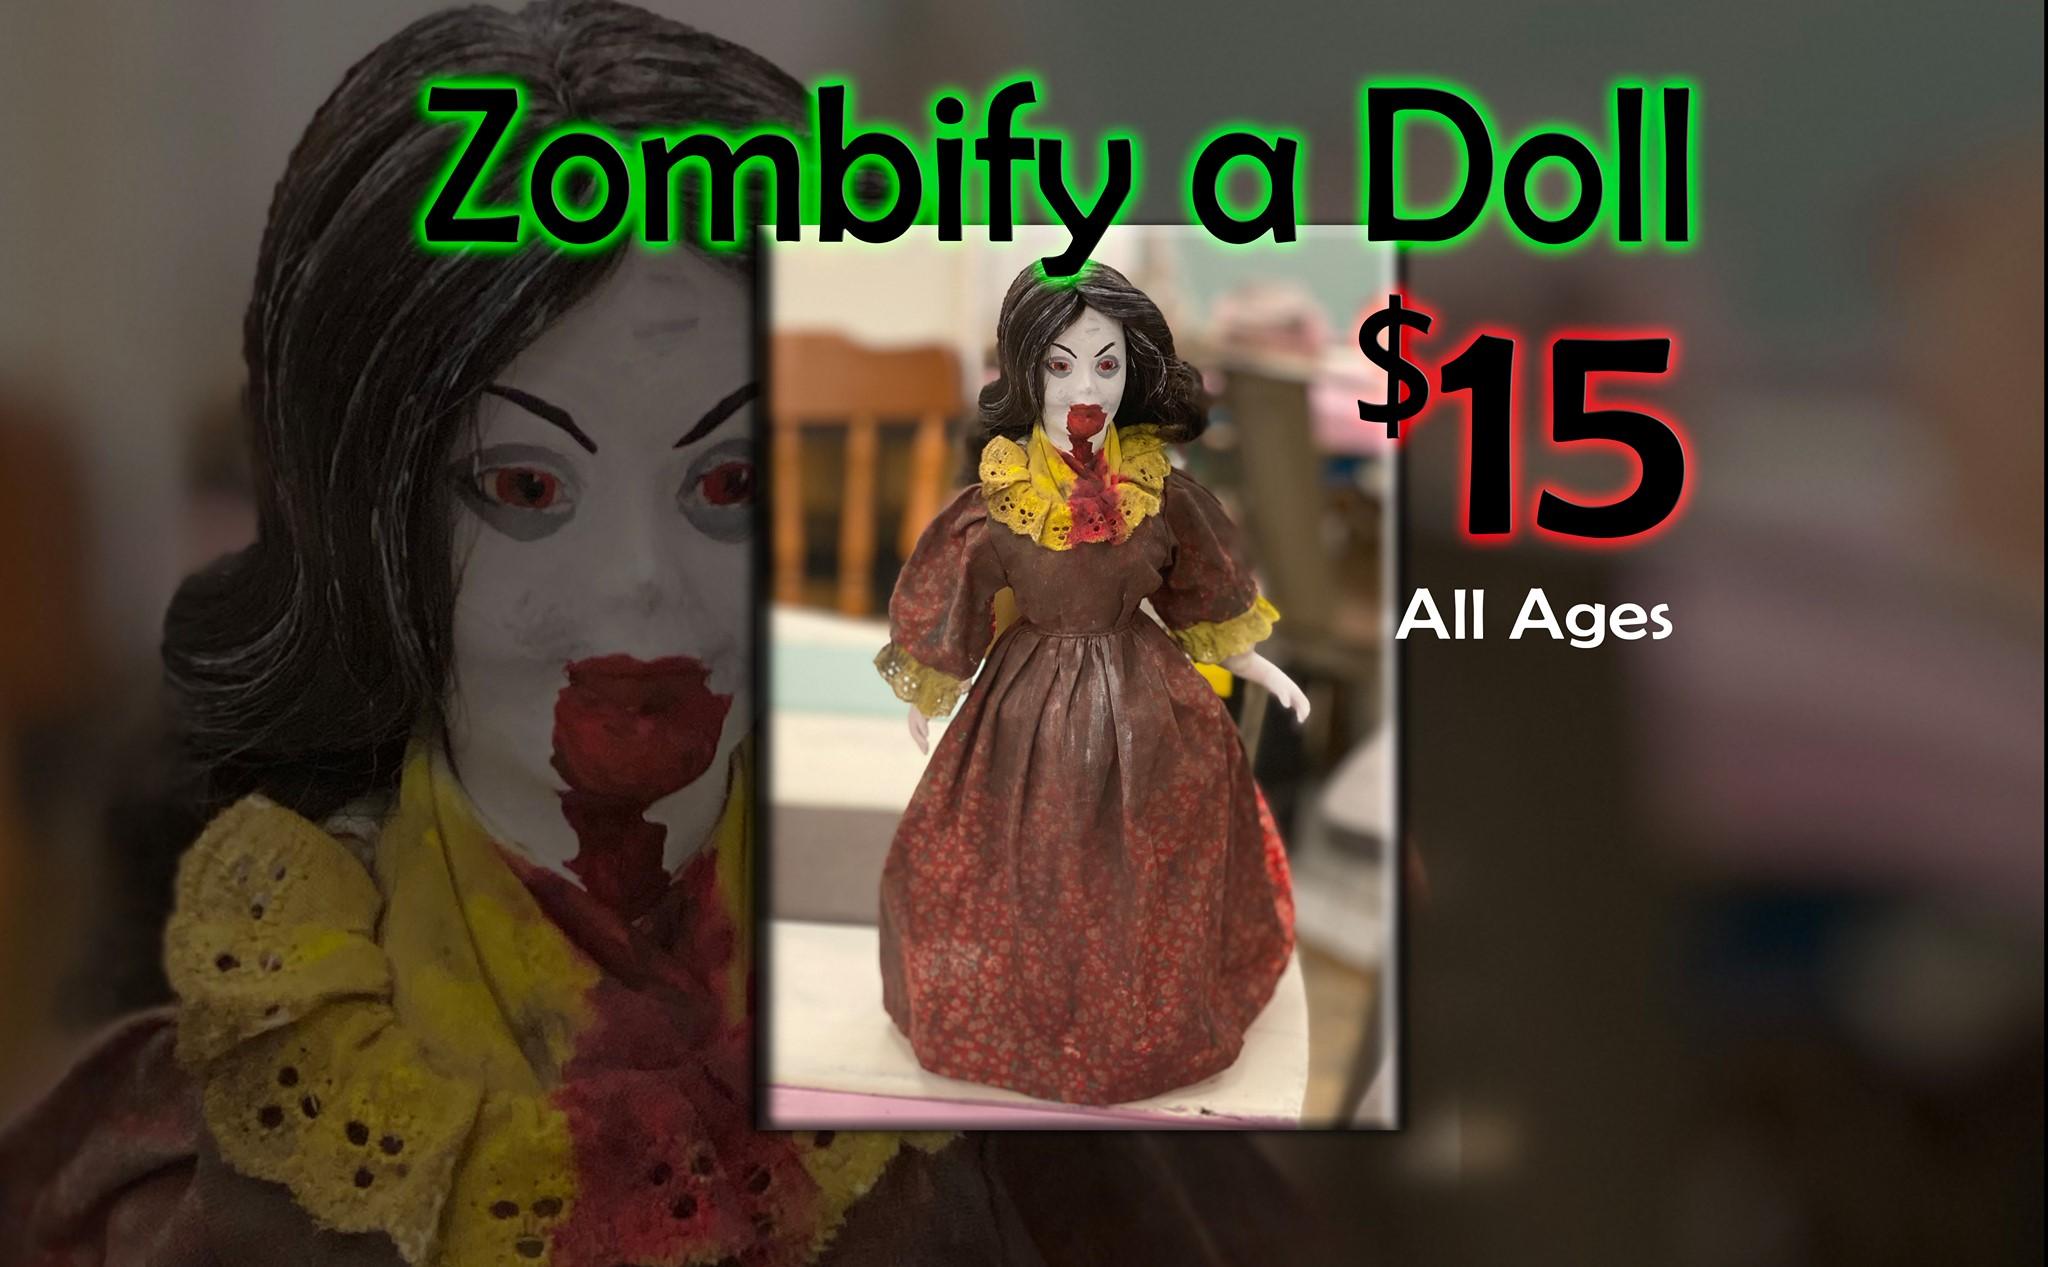 Zombify a Doll